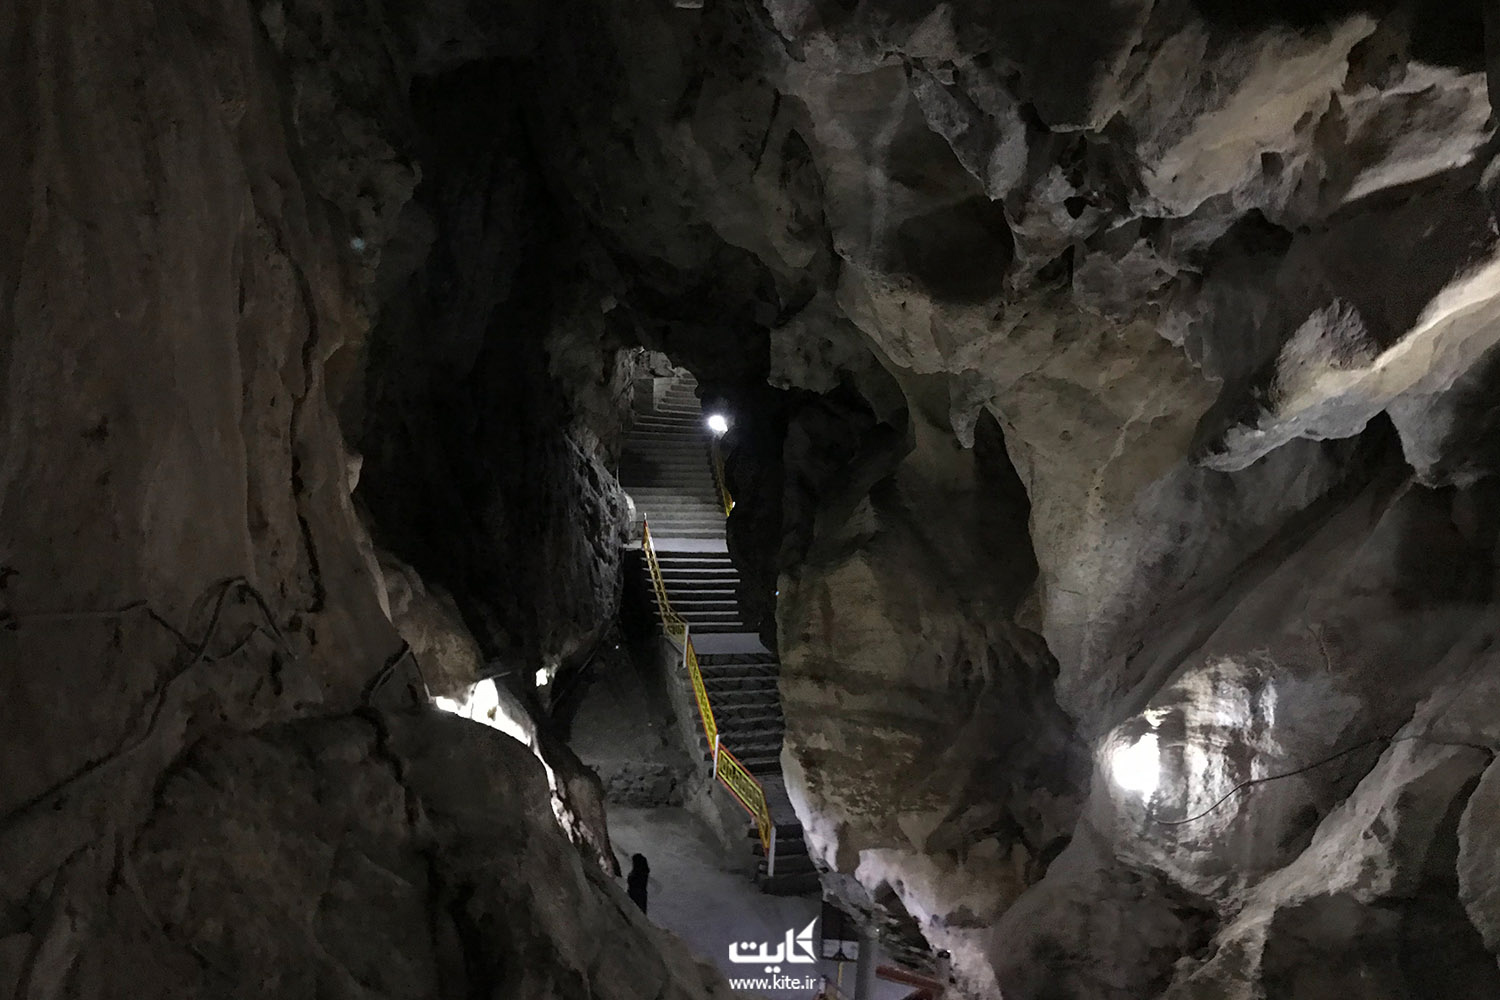 دیواره های سنگی غار و چندین پله